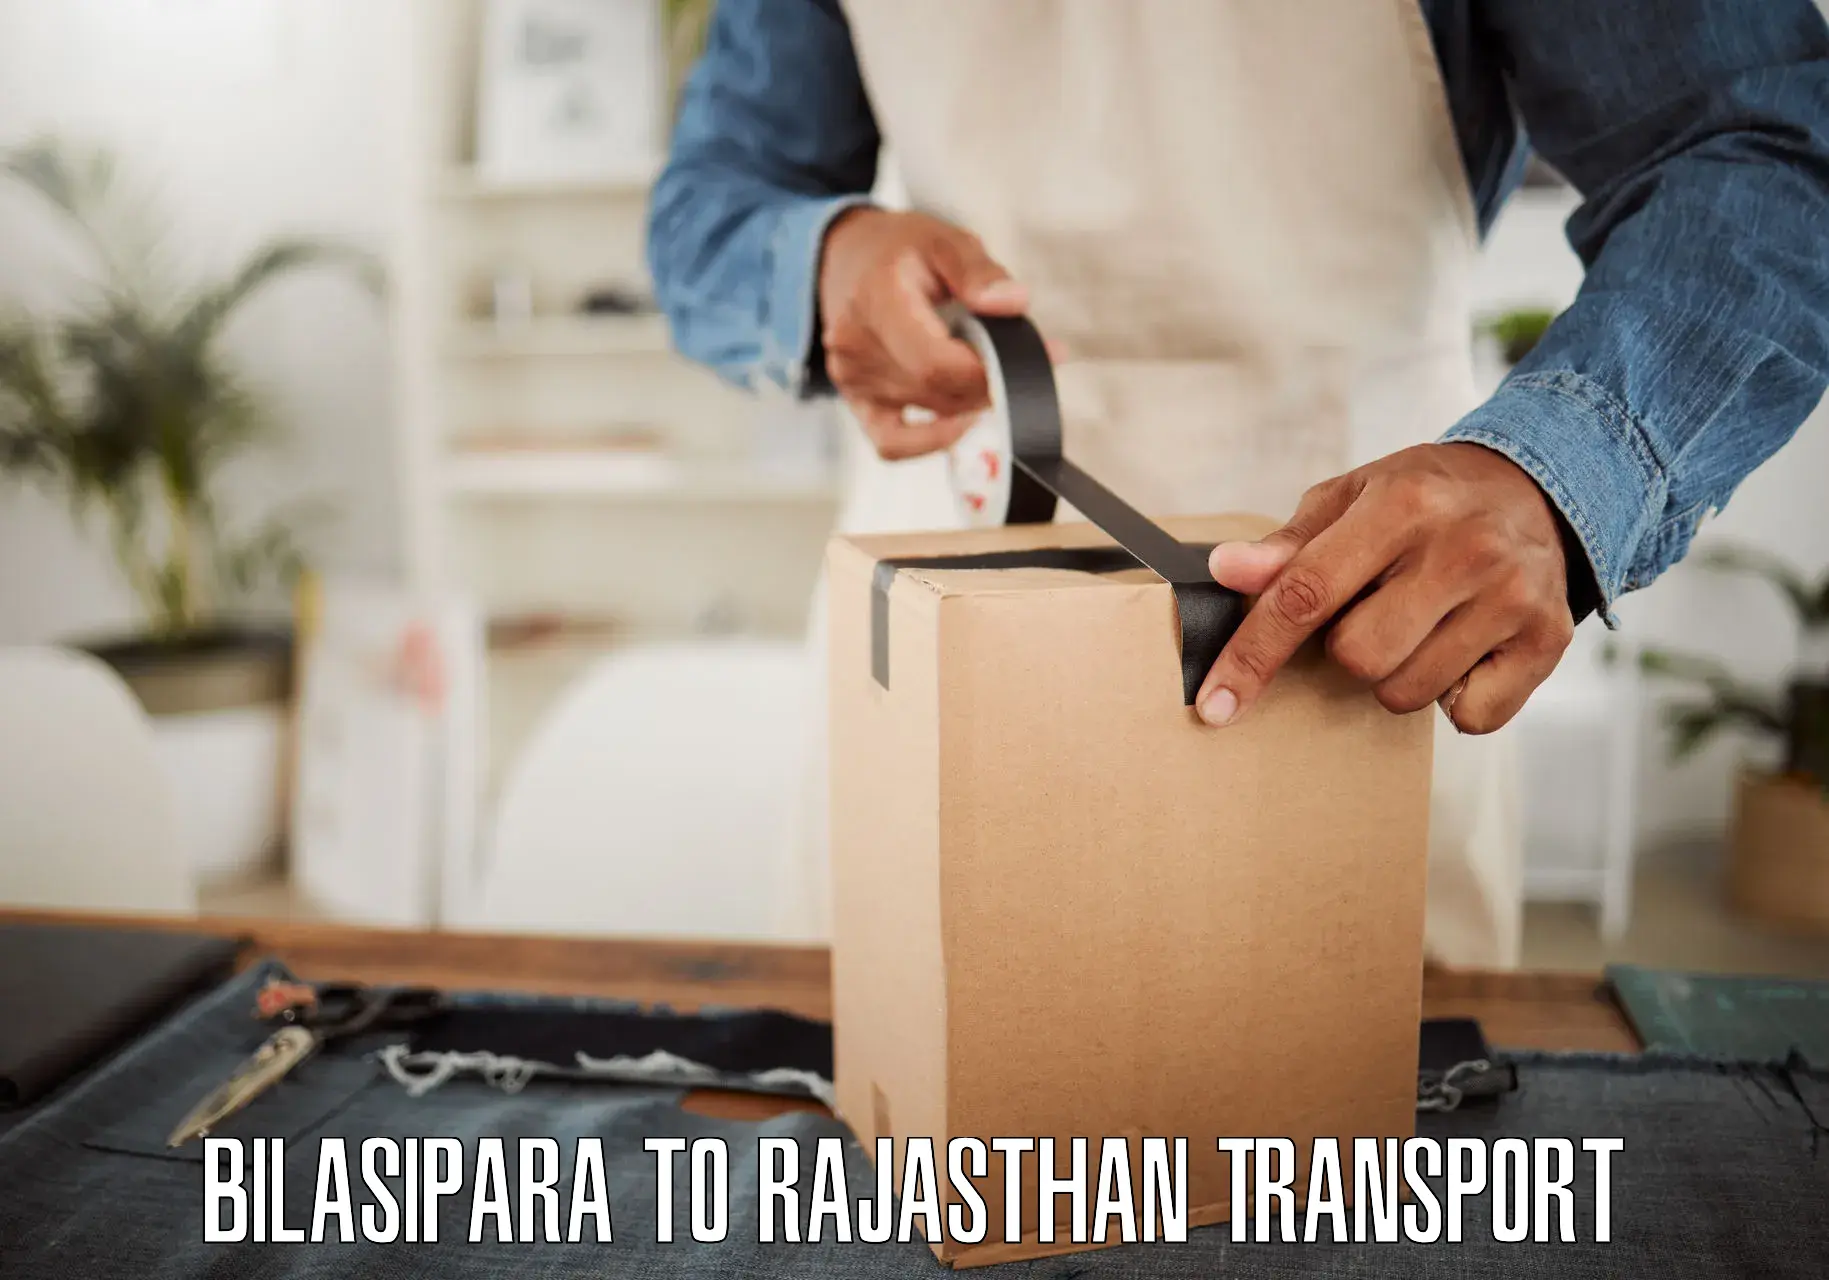 Furniture transport service Bilasipara to Kota